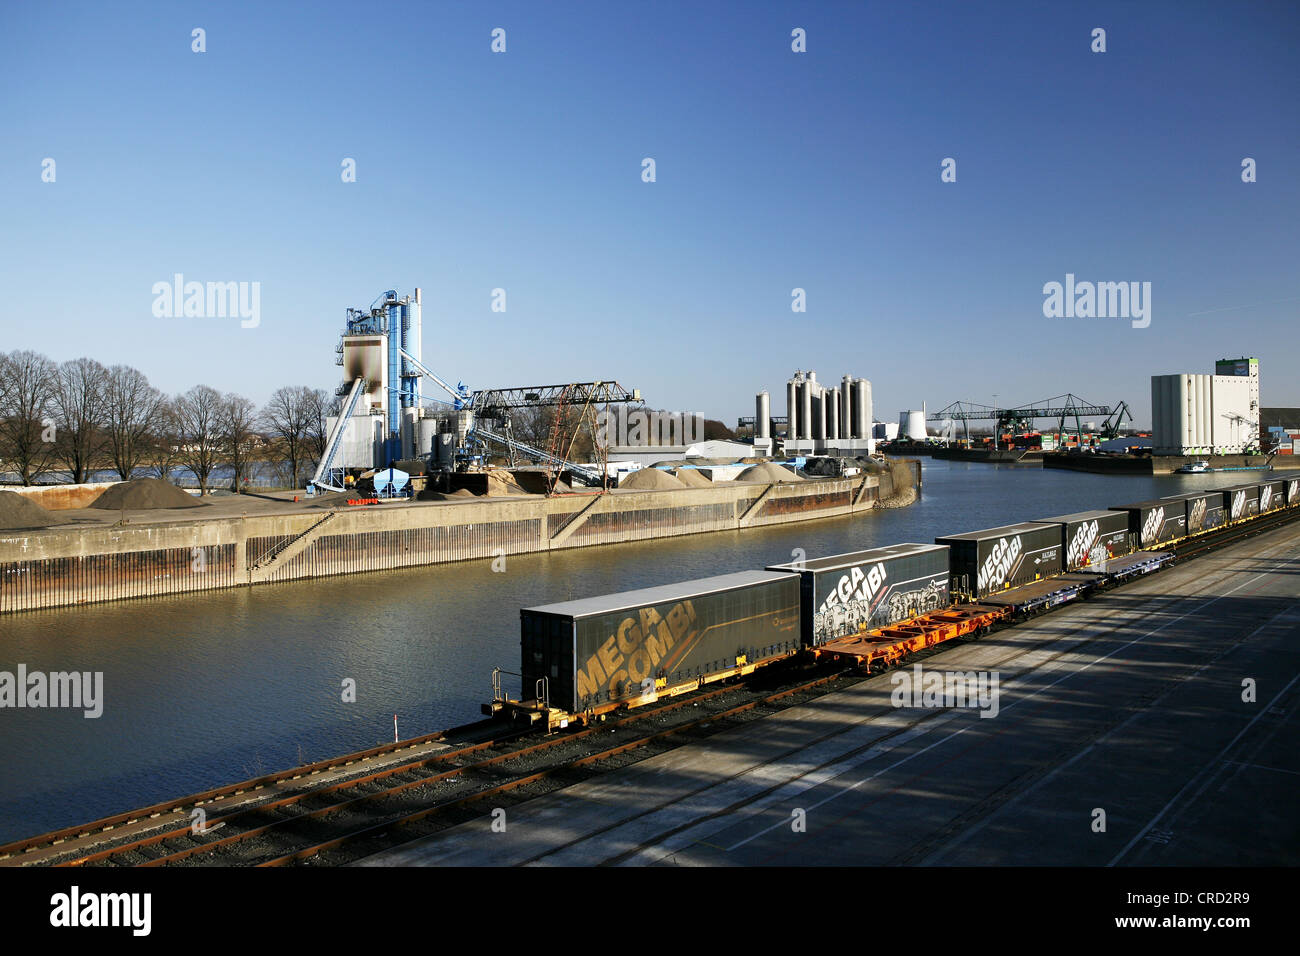 Hafen von niehl, Köln - niehl, Köln, Nordrhein - Westfalen, Deutschland, Europa Stockfoto